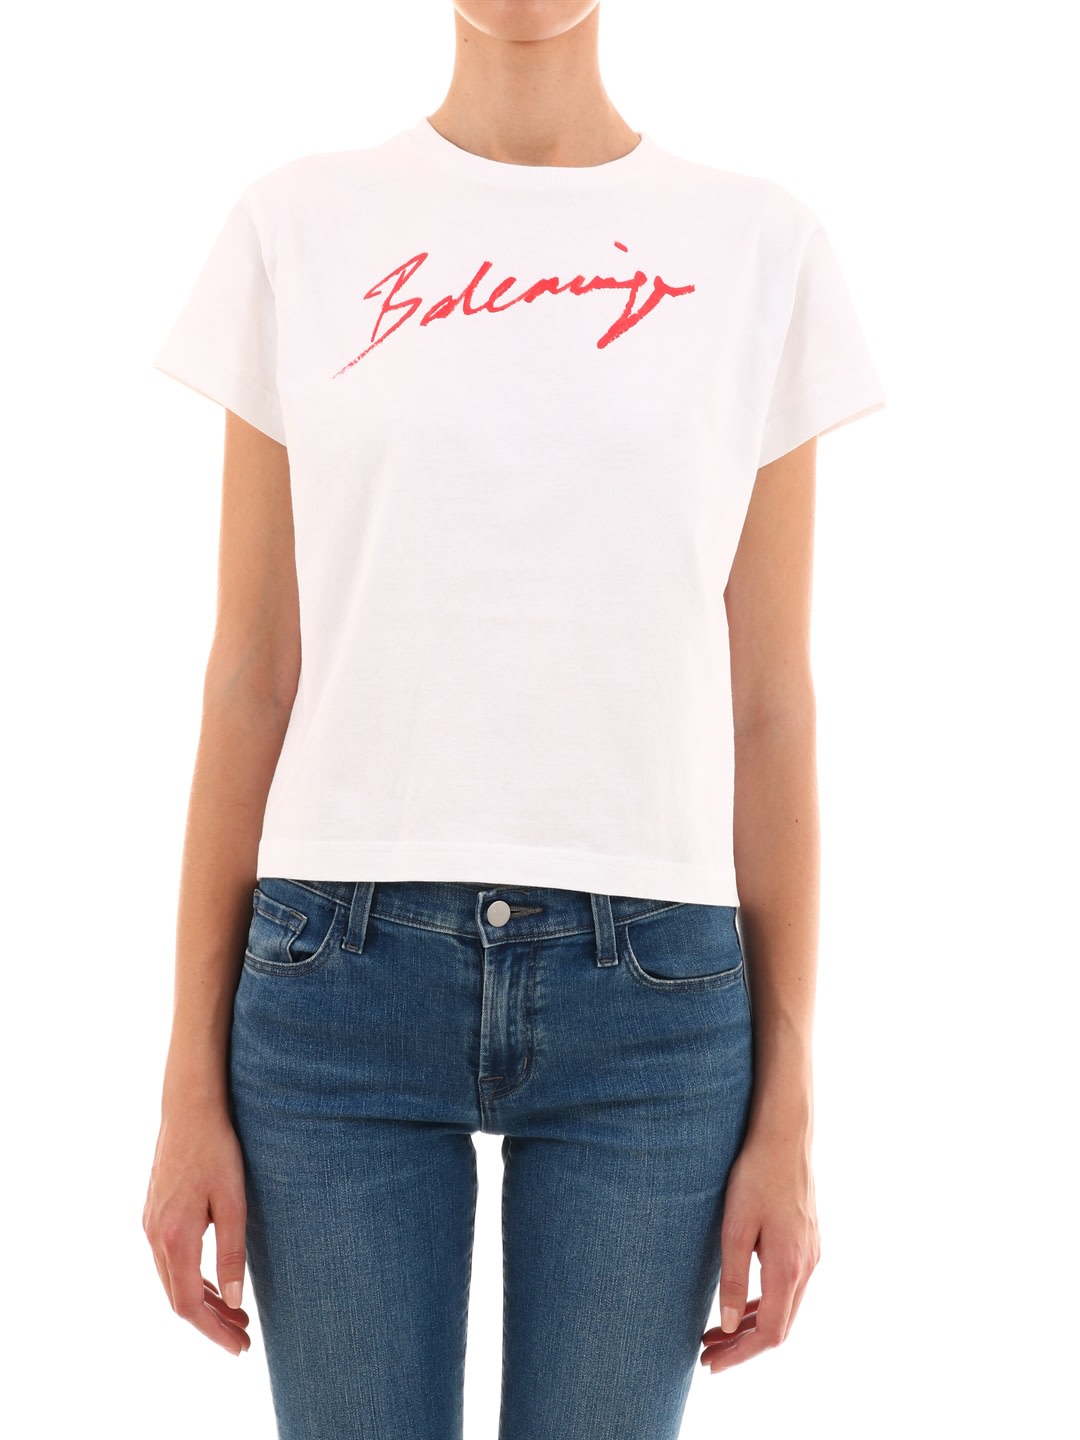  Balenciaga  Balenciaga T shirt  Logo Signature White 